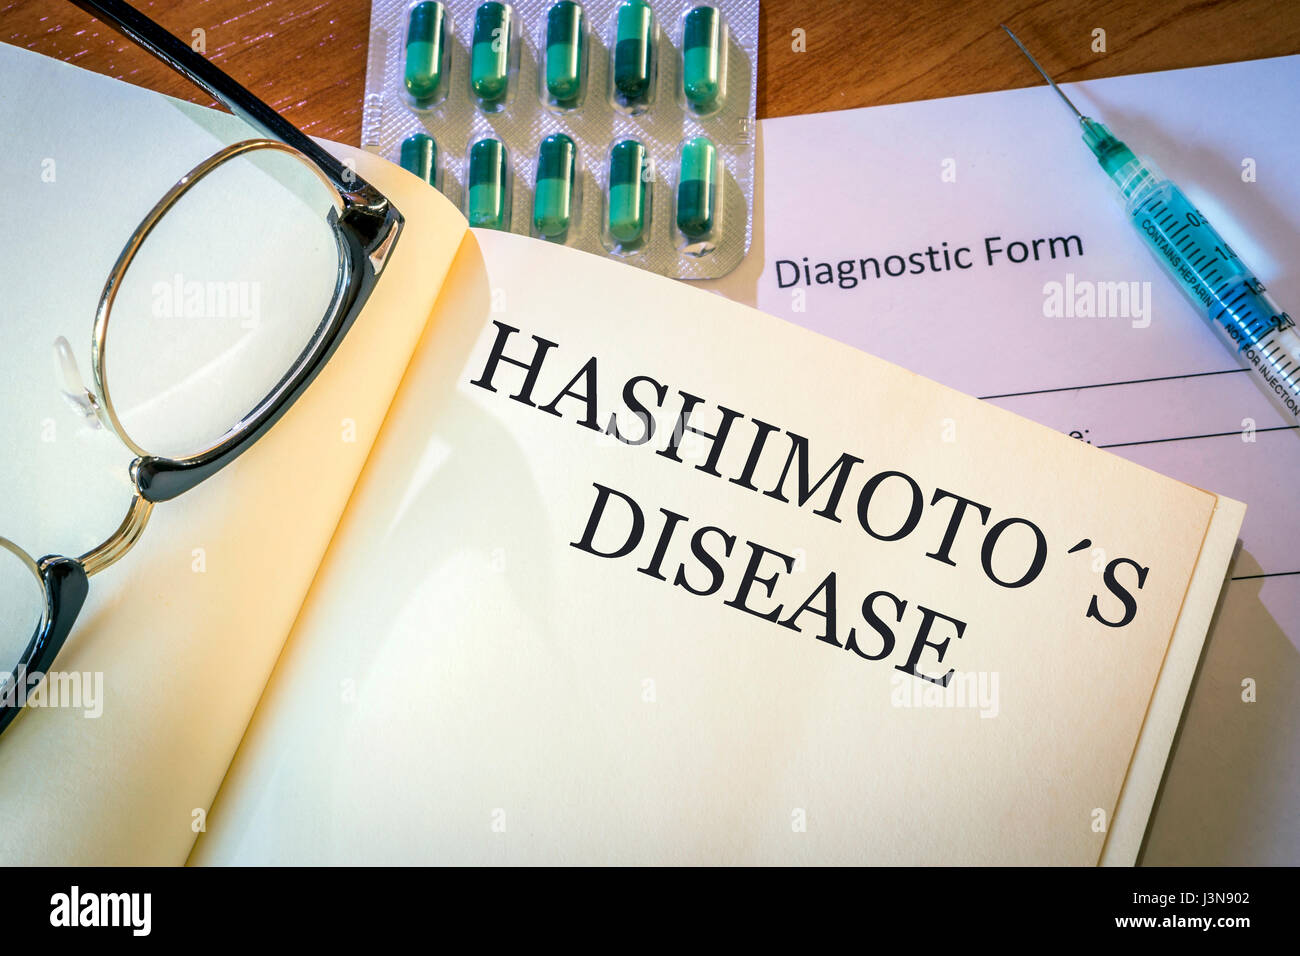 Book with diagnosis Hashimoto disease. Medical concept Stock Photo